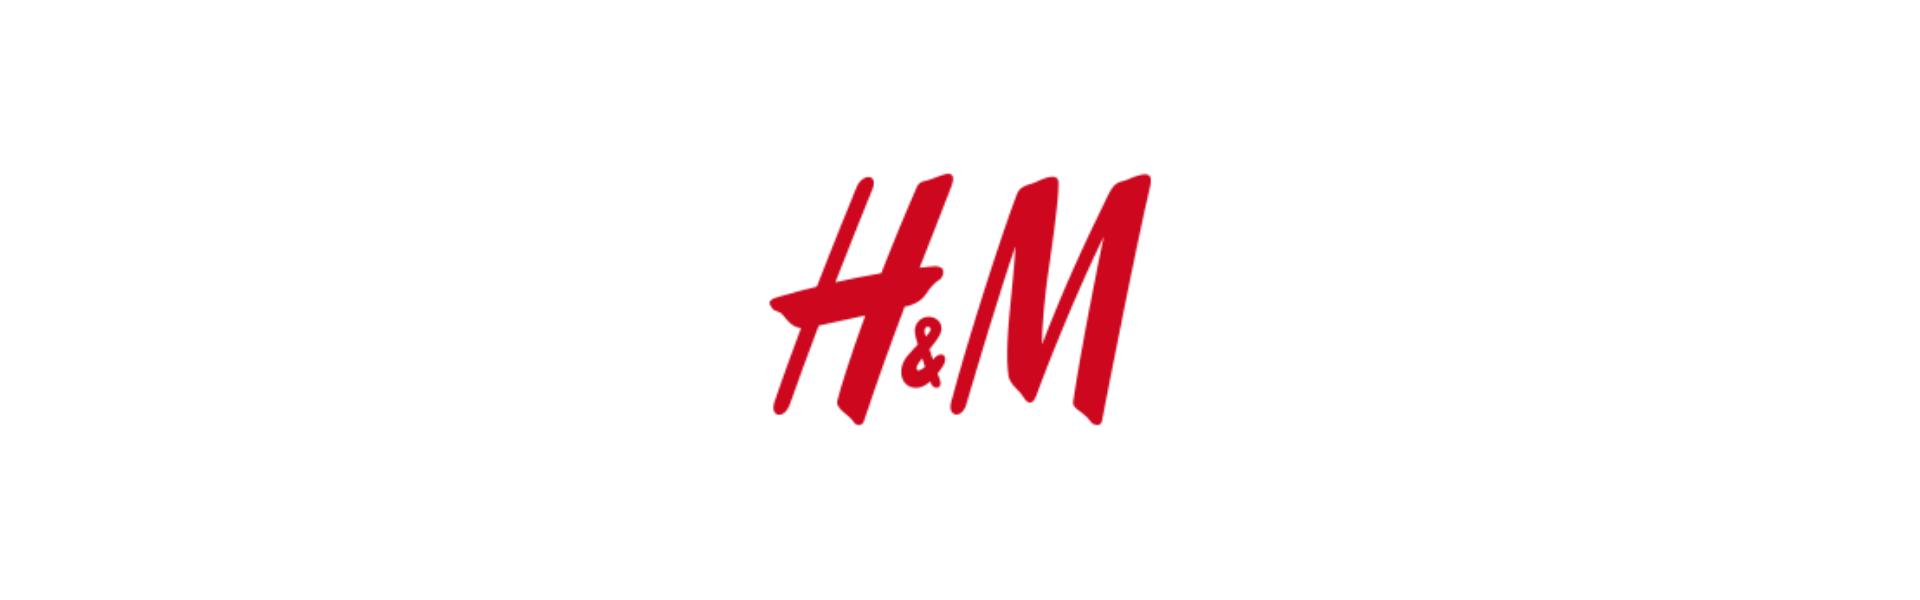 Аш дем. H M эмблема. Эйч энд эм логотип. Логотип магазина h and m. H&M картинки.